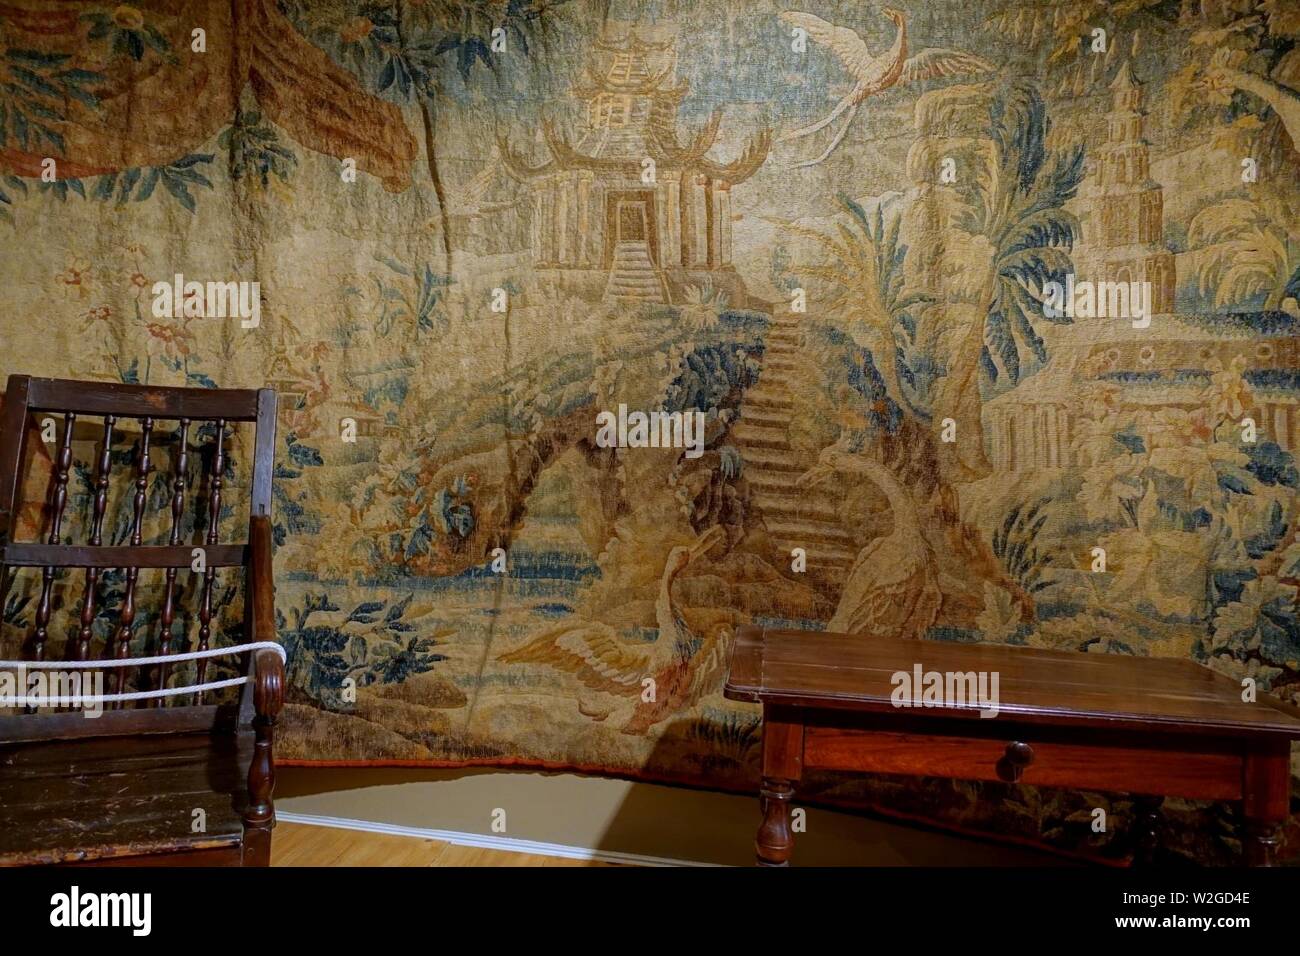 Chinoiserie tapisserie, Aubusson, 1725, de la laine, avec Louis XIII table, fin des années 1600 au début des années 1700, cerisier, pin - Château Ramezay - Montréal, Canada - Banque D'Images